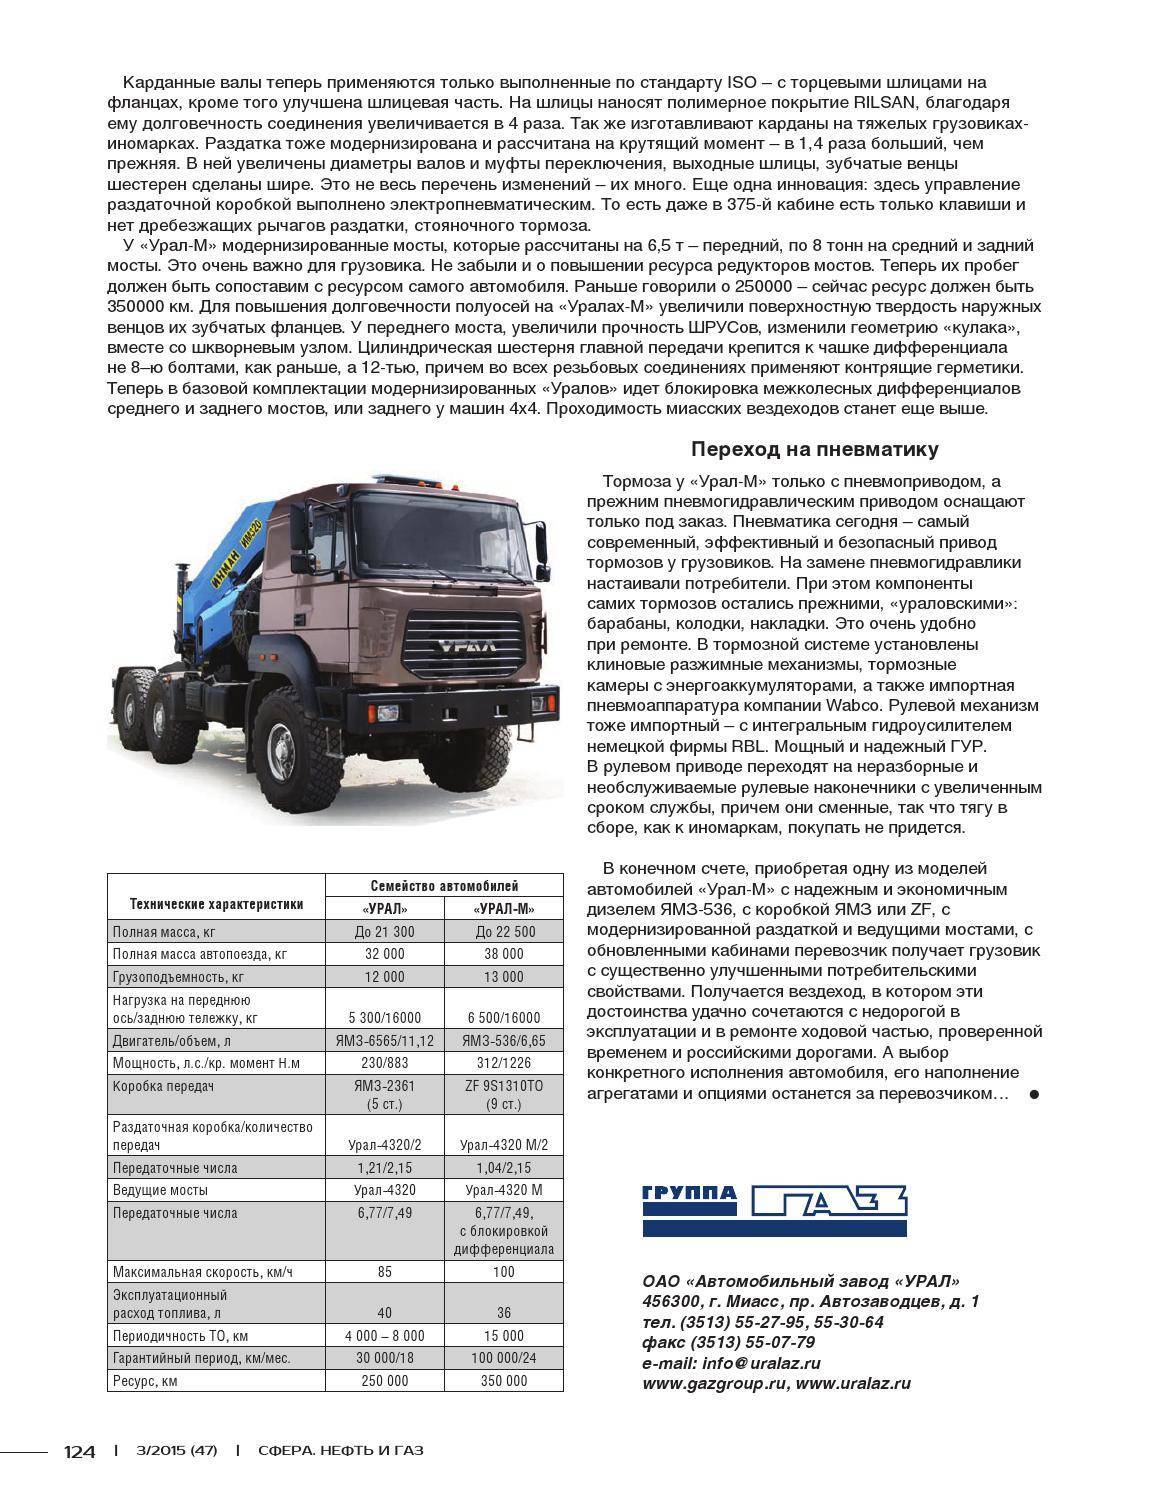 Двигатель ямз-536: описание, технические характеристики, руководство по эксплуатации :: syl.ru